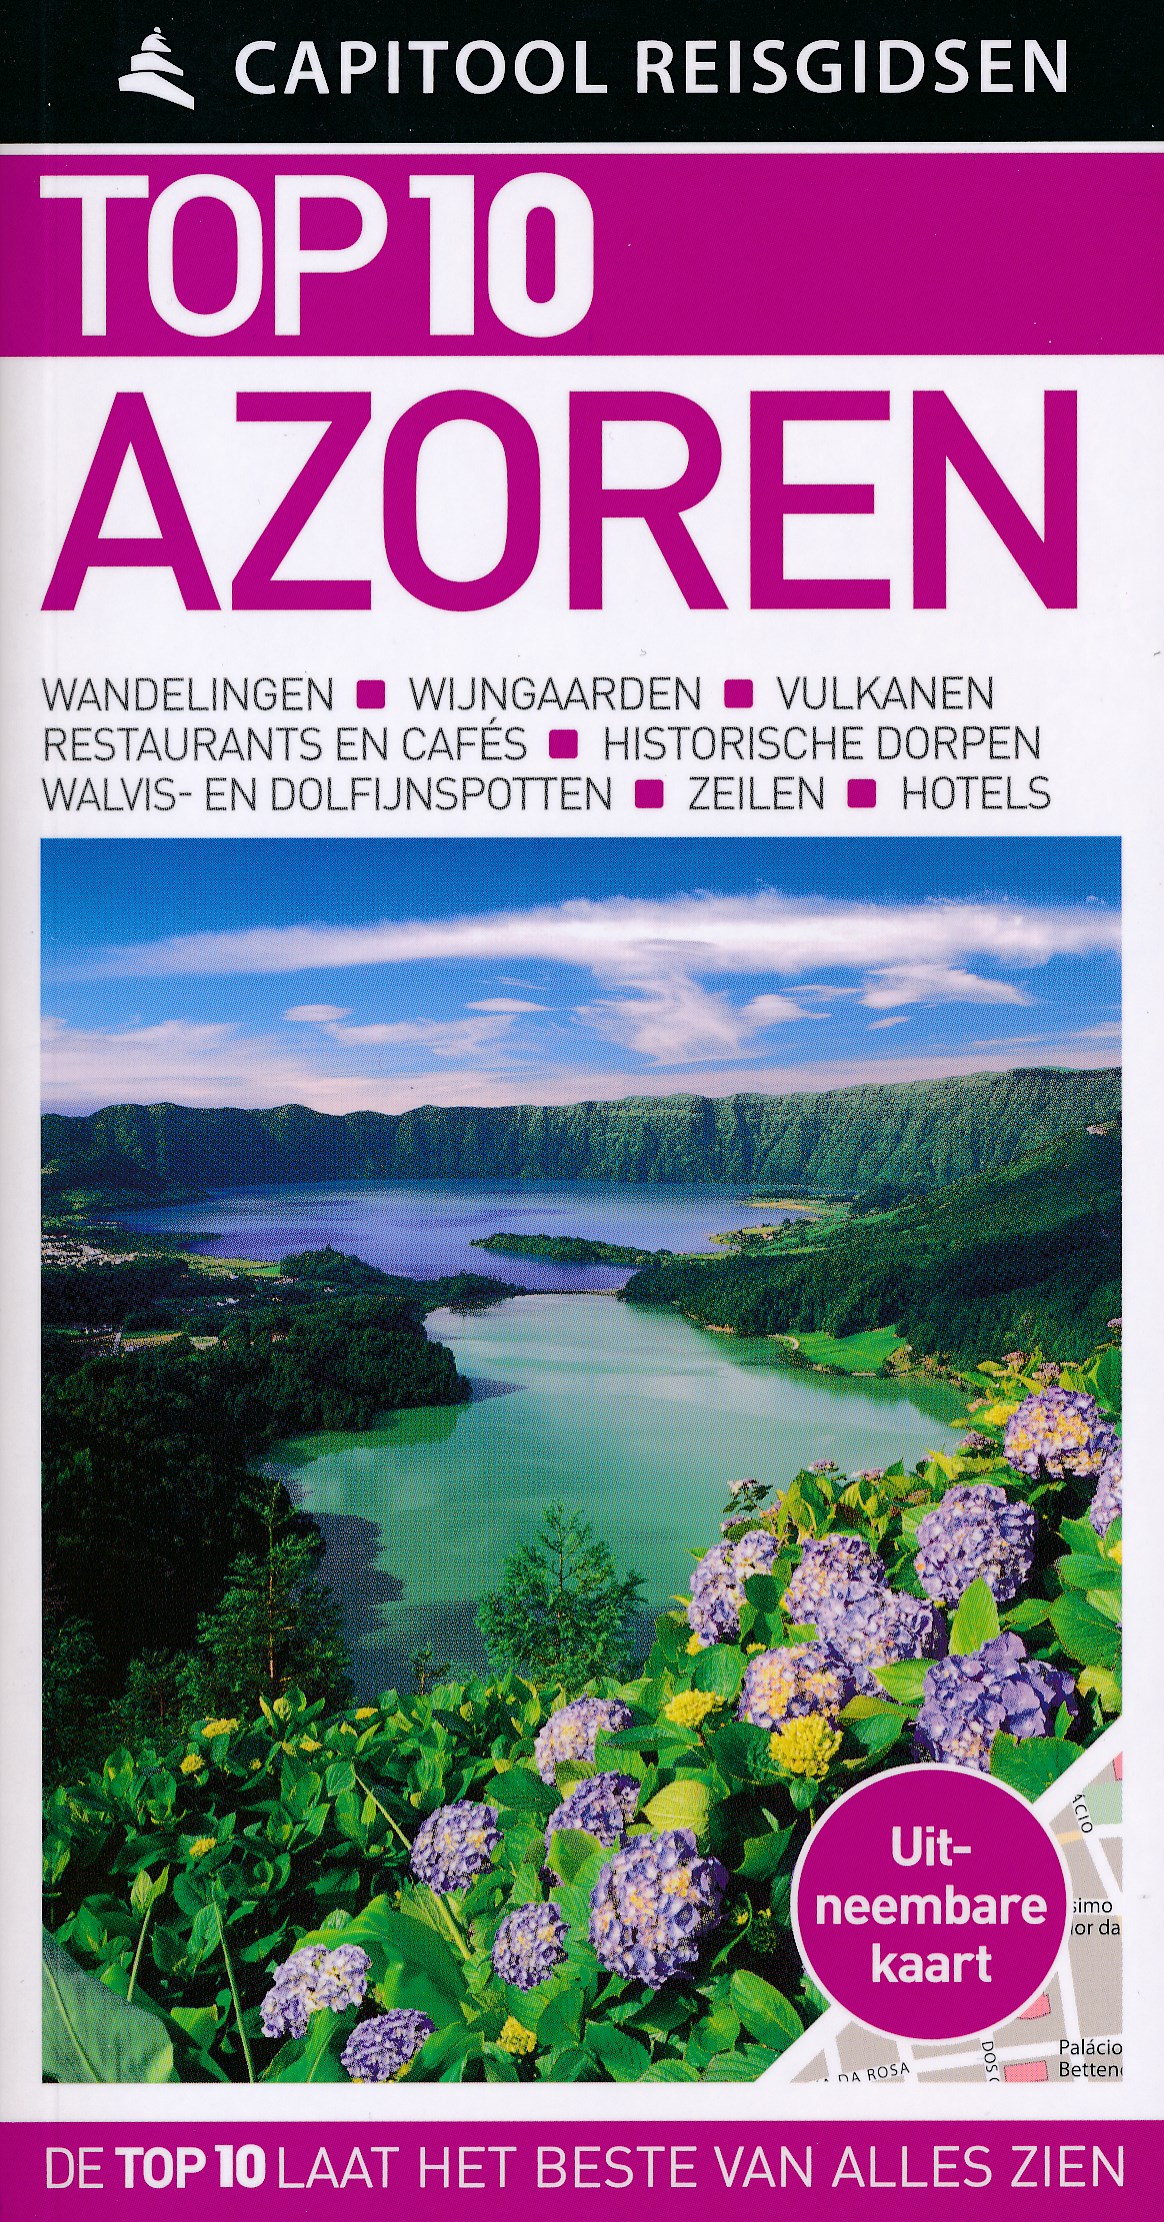 Online bestellen: Reisgids Capitool Top 10 Azoren | Unieboek